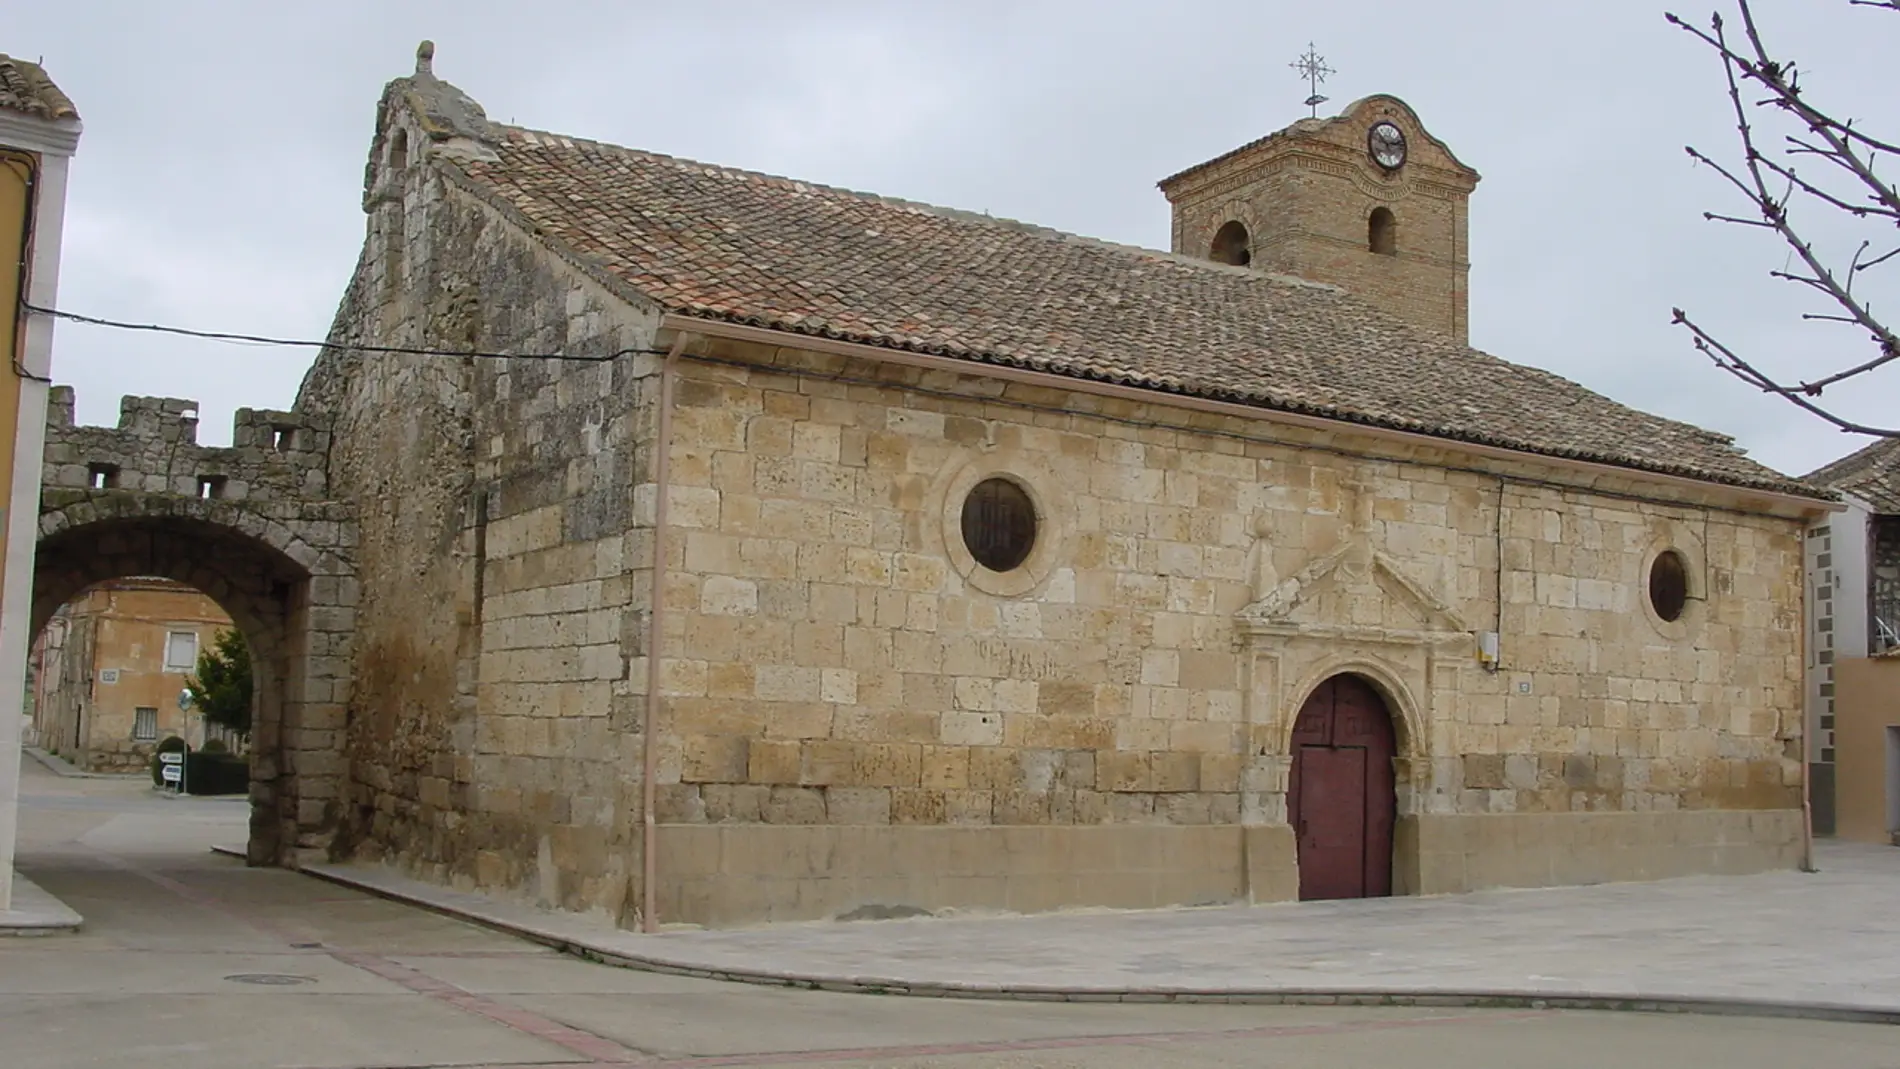 Iglesia de Santa María del castillo de Valbuena de Duero